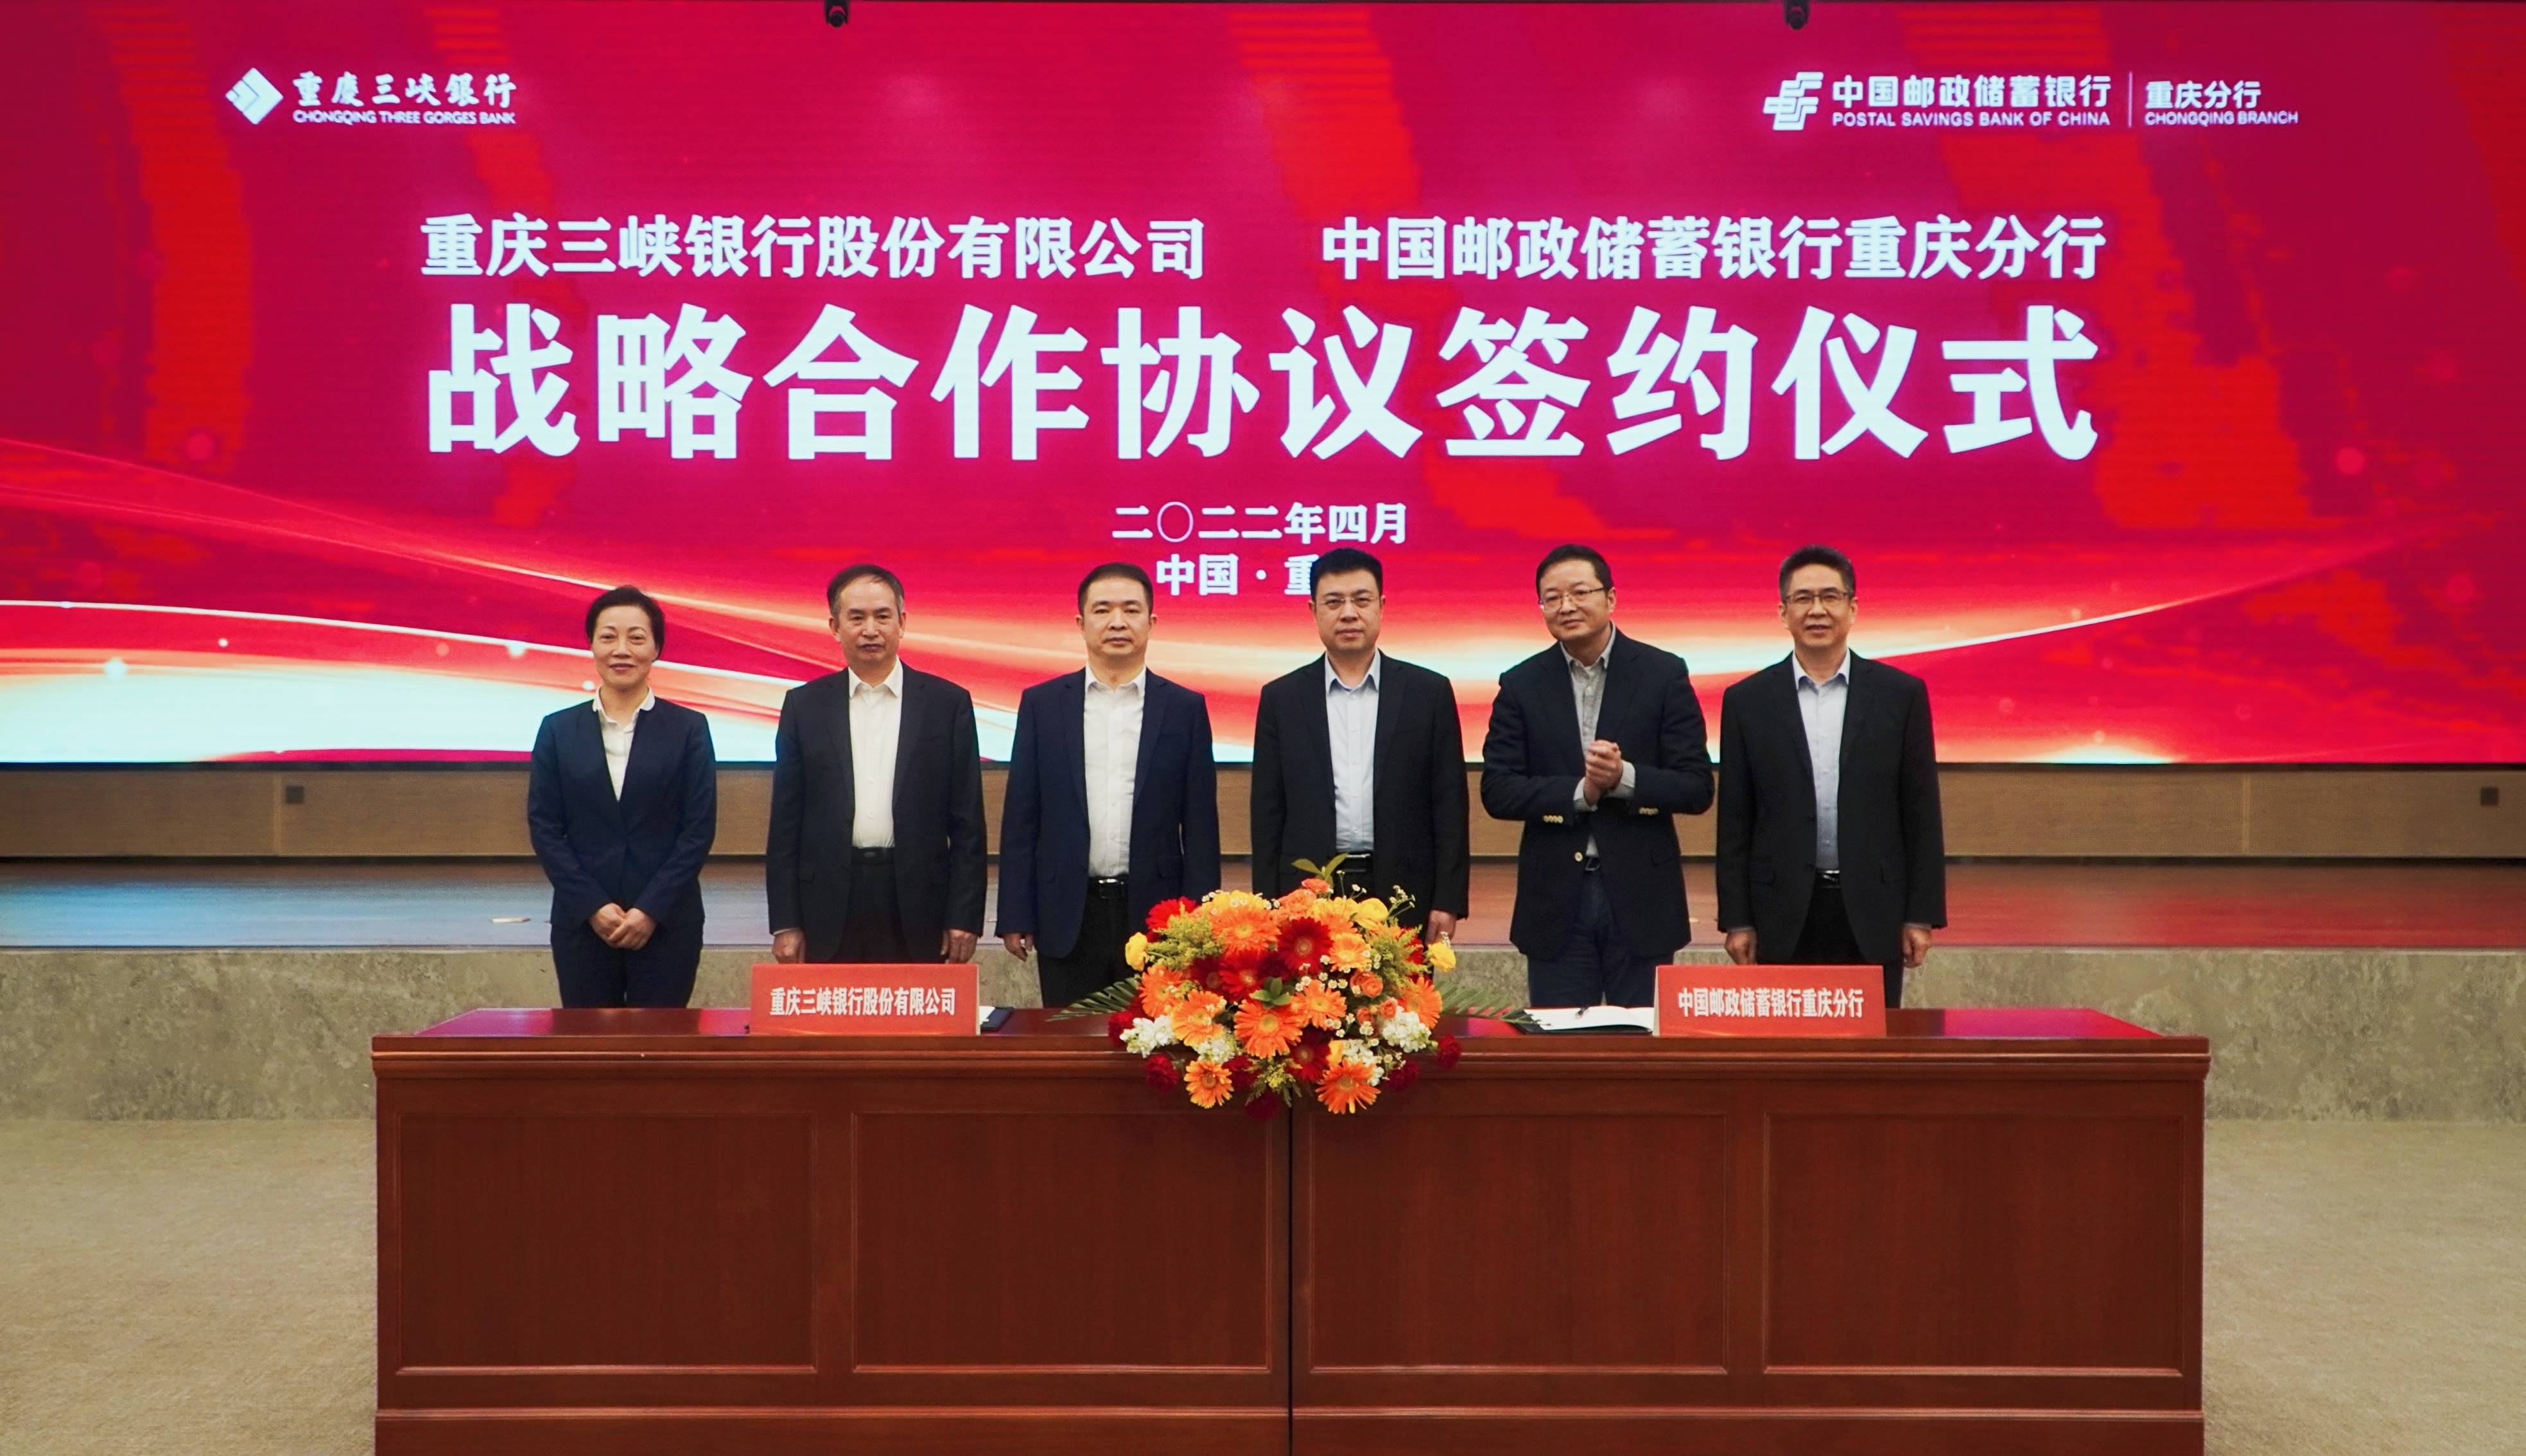 邮储银行重庆分行与重庆三峡银行签署战略合作协议